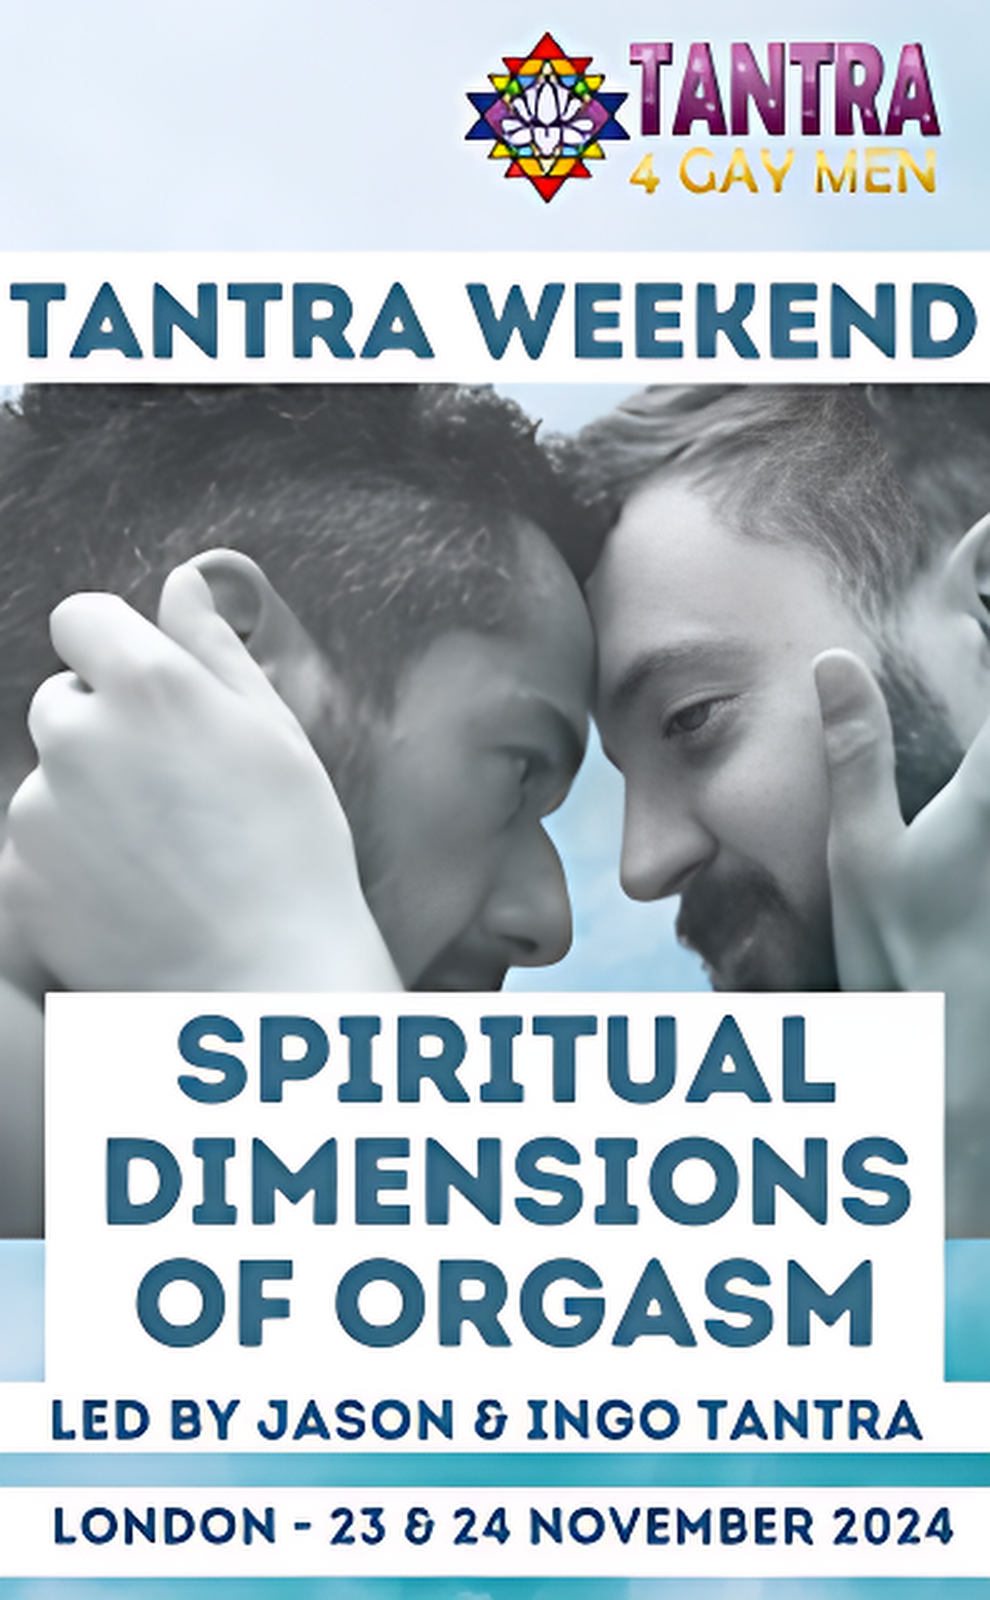 סופשבוע טנטרה: מימדים רוחניים של אורגזמה